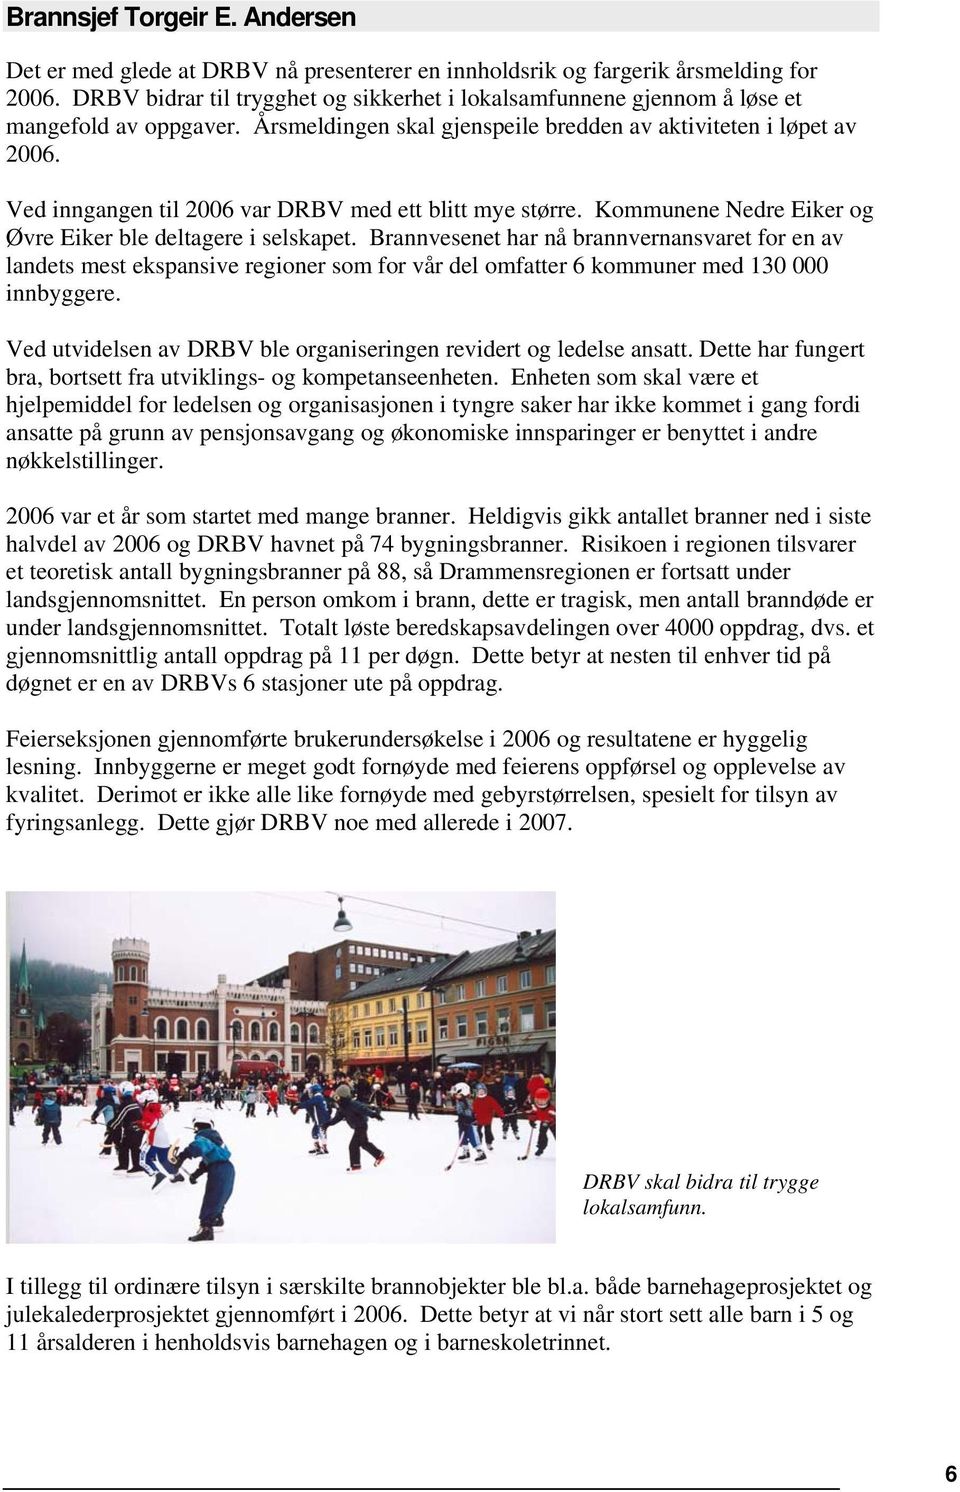 Ved inngangen til 2006 var DRBV med ett blitt mye større. Kommunene Nedre Eiker og Øvre Eiker ble deltagere i selskapet.